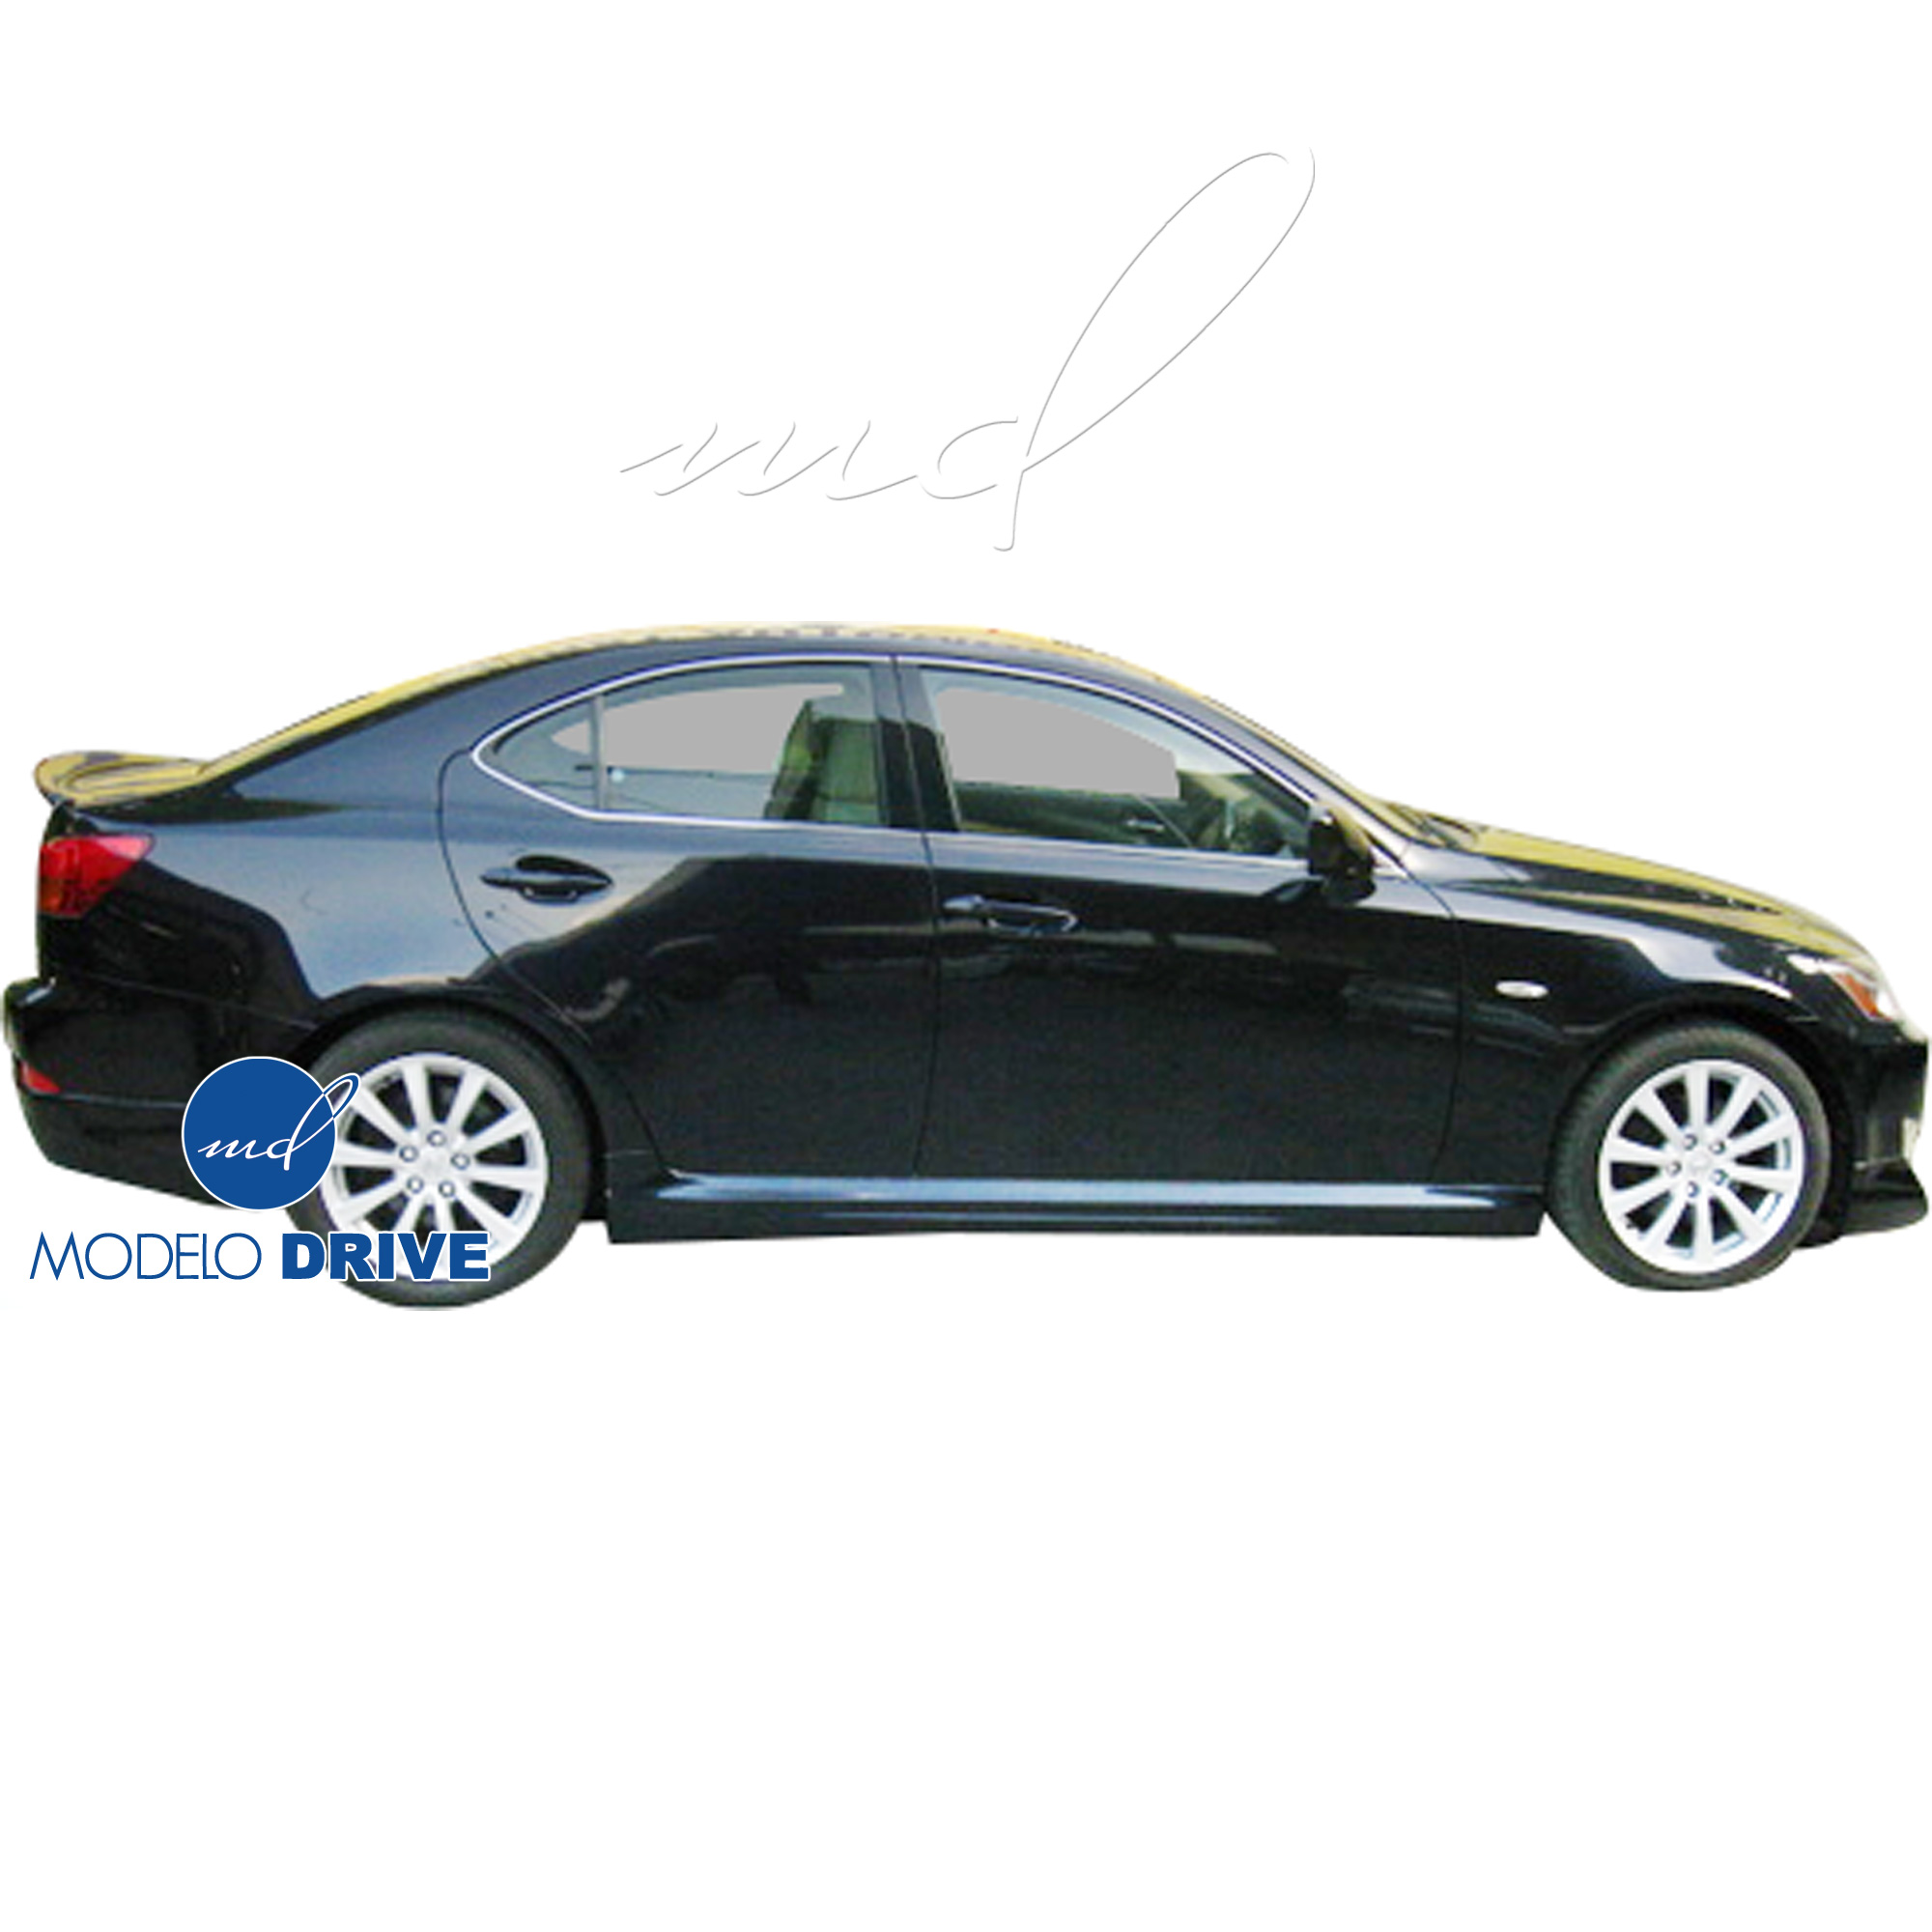 ModeloDrive FRP ING Side Skirts > Lexus IS250 2006-2013 > 4-Door Sedan - Image 2